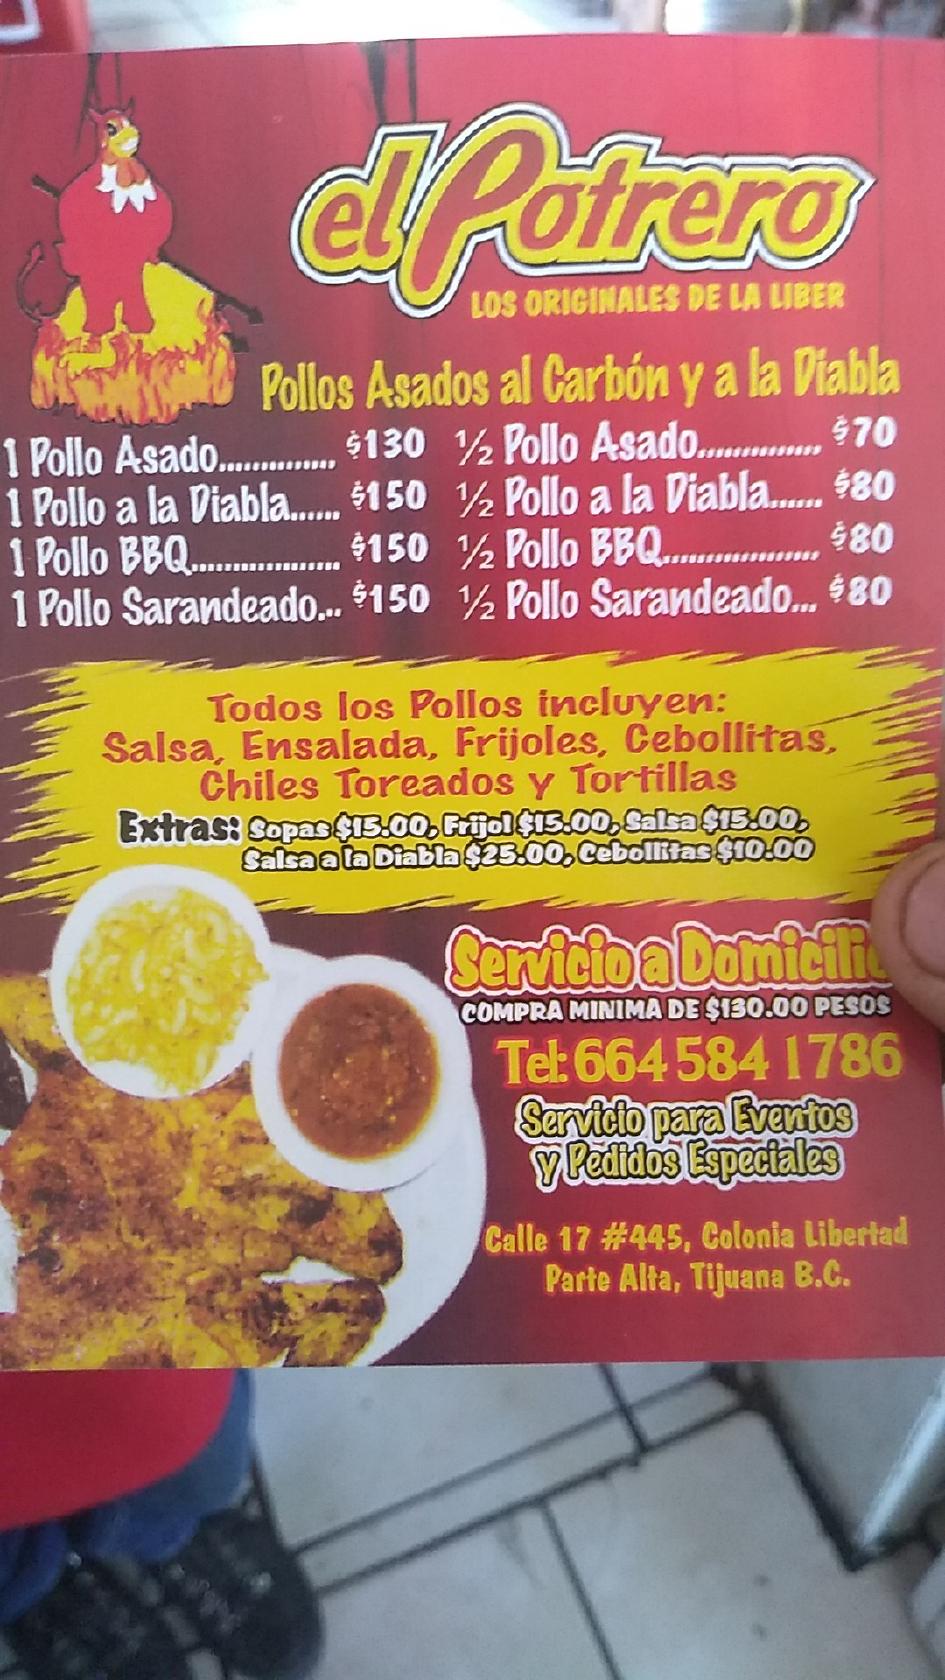 POLLOS El POTRERO #1 restaurant, Tijuana - Restaurant reviews